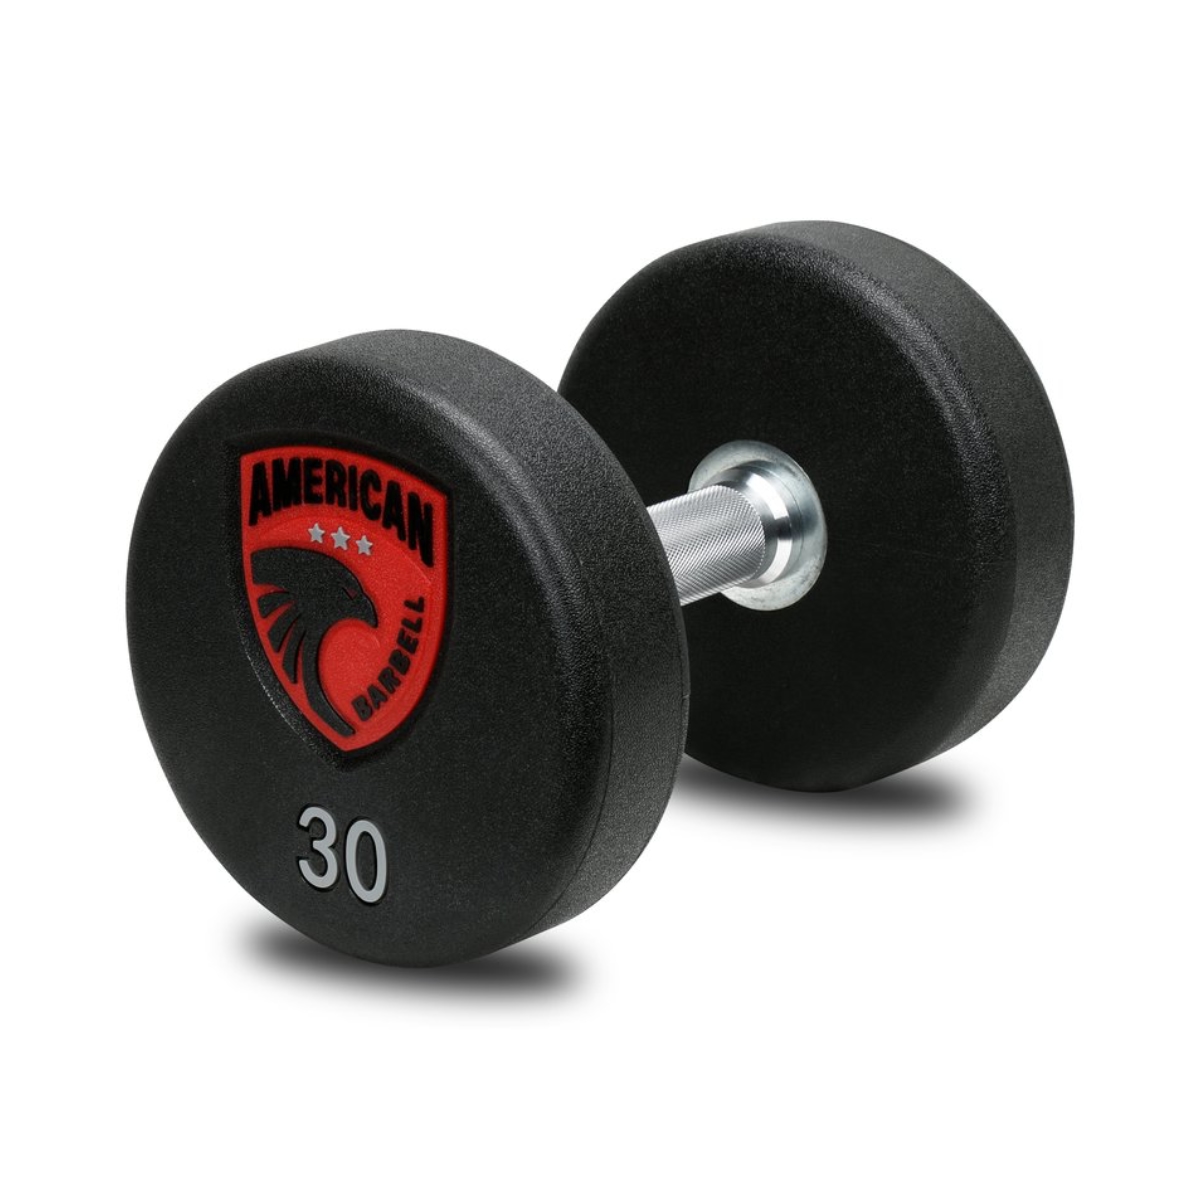 Brug American Barbell Series 4 Urethane Dumbbell Håndvægtsæt 22-40 kg til en forbedret oplevelse